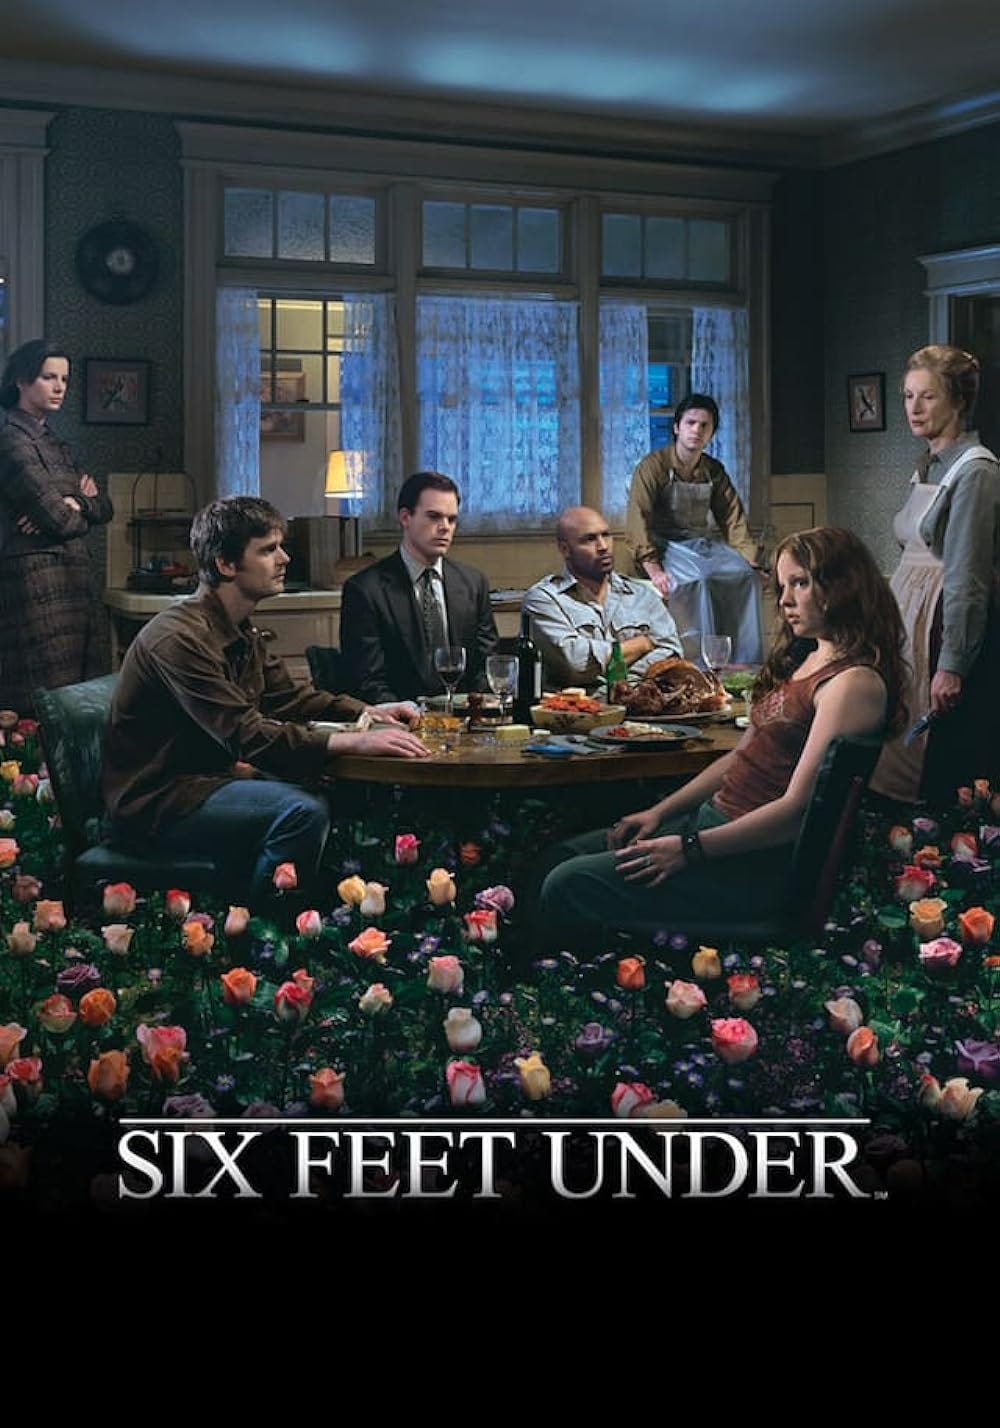 Six Feet Under (TV Series 2001–2005) - External reviews - IMDb